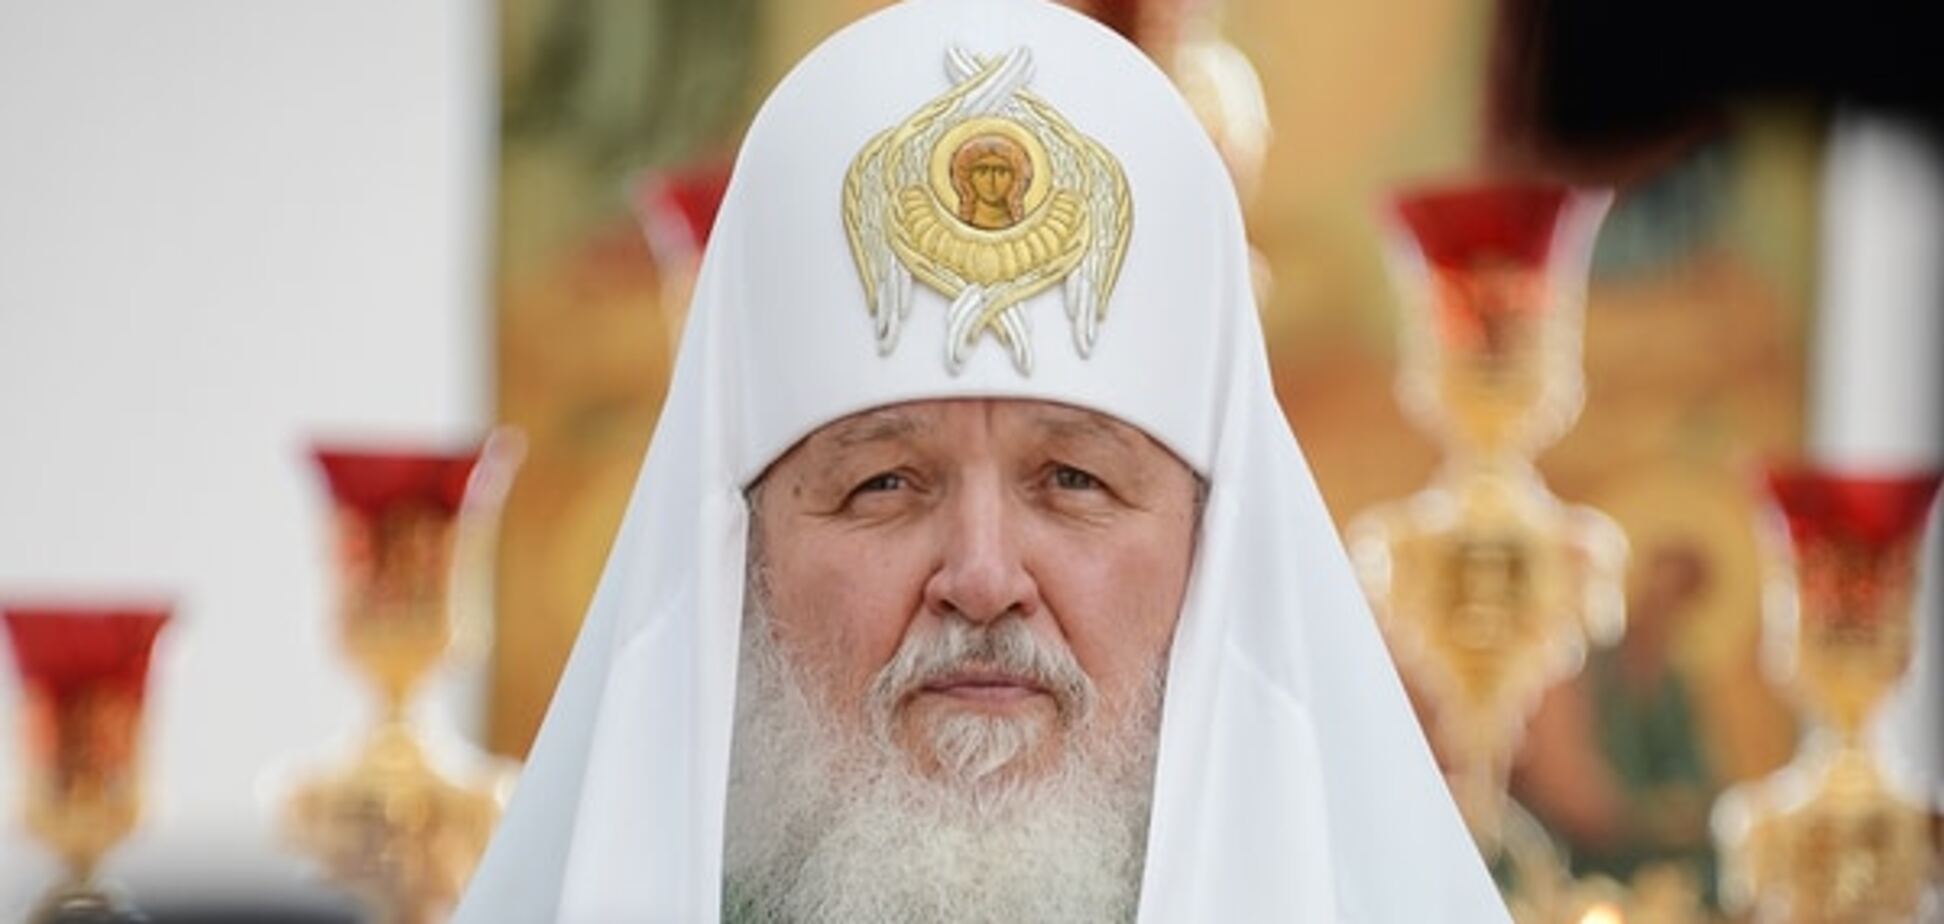 Скрепы: патриарх Кирилл заговорил о 'нравственности' и справедливости